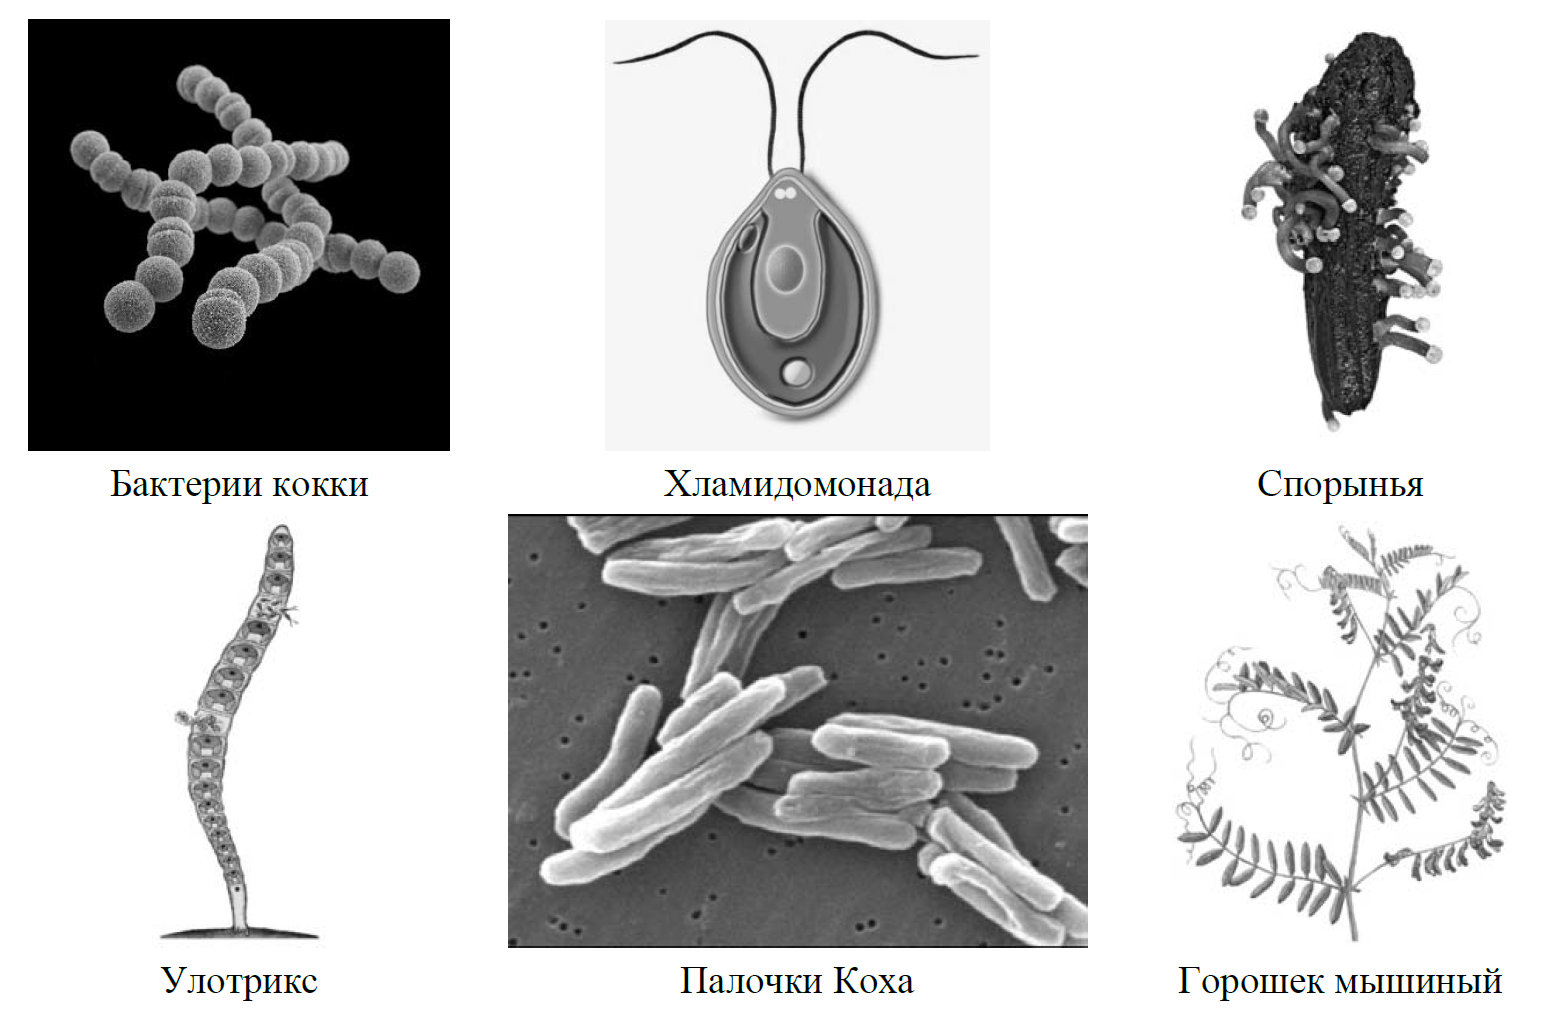 Рассмотрите изображение шести организмов впр